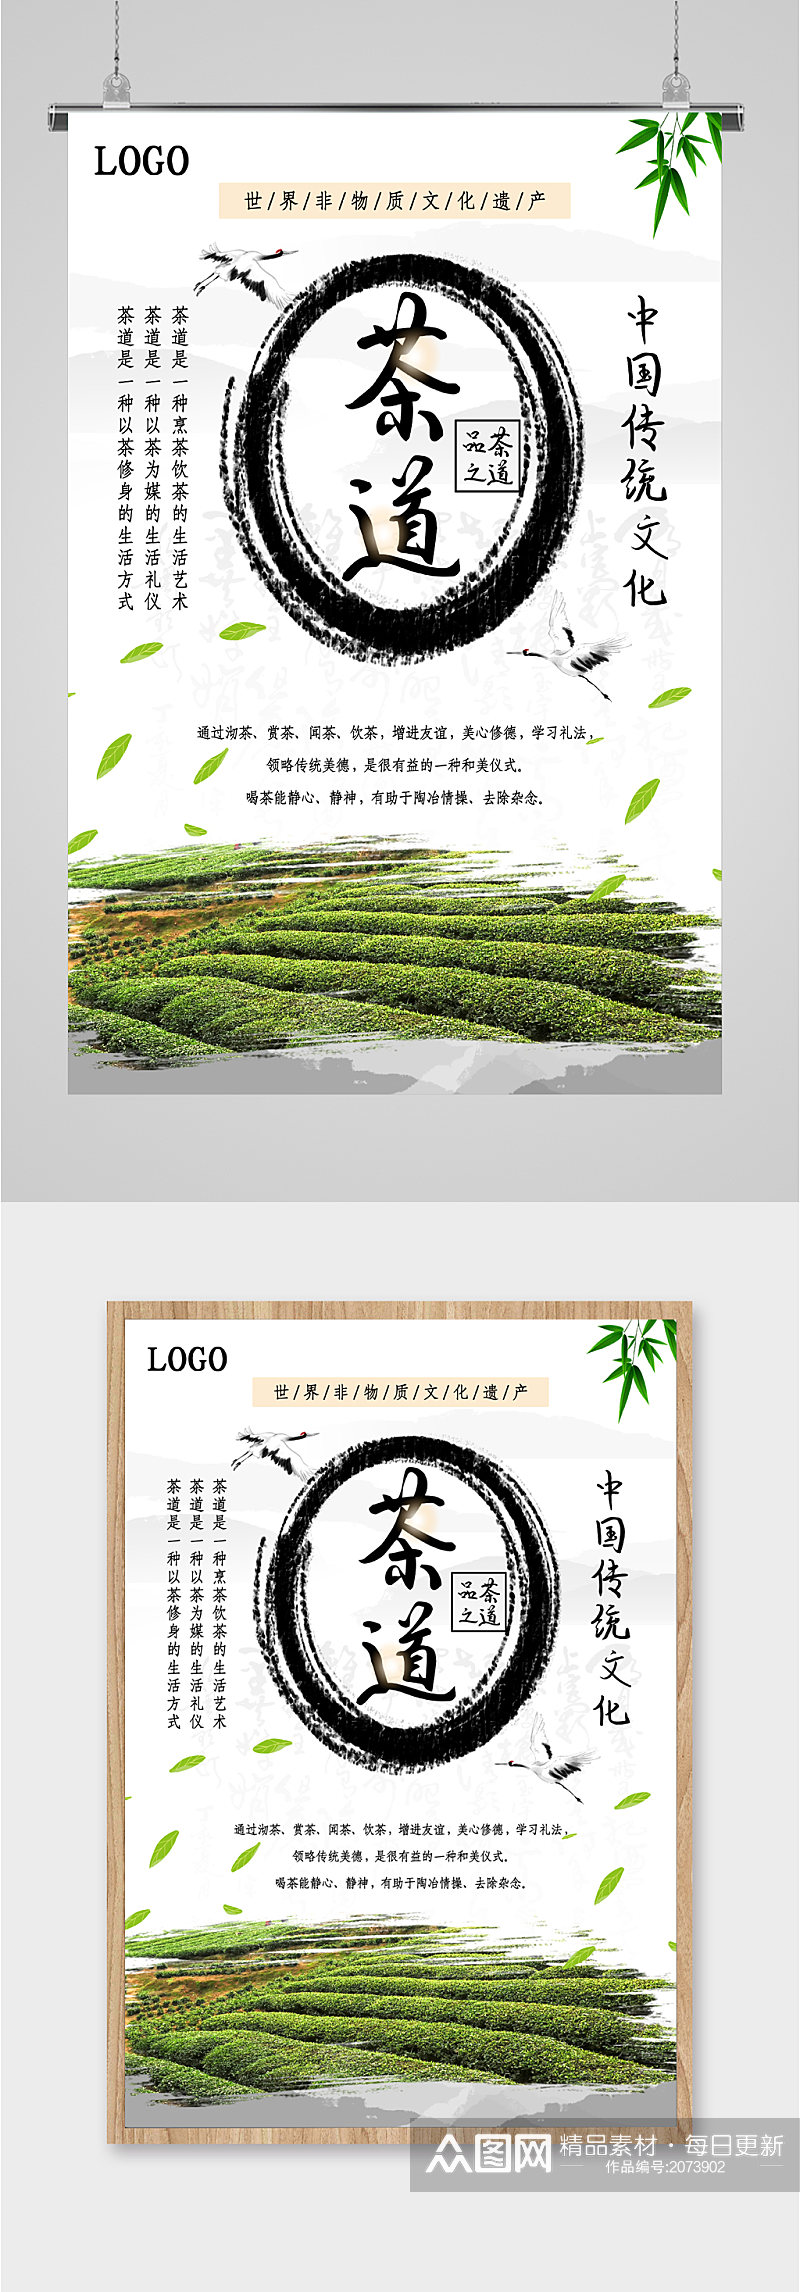 中国传统文化茶道海报素材